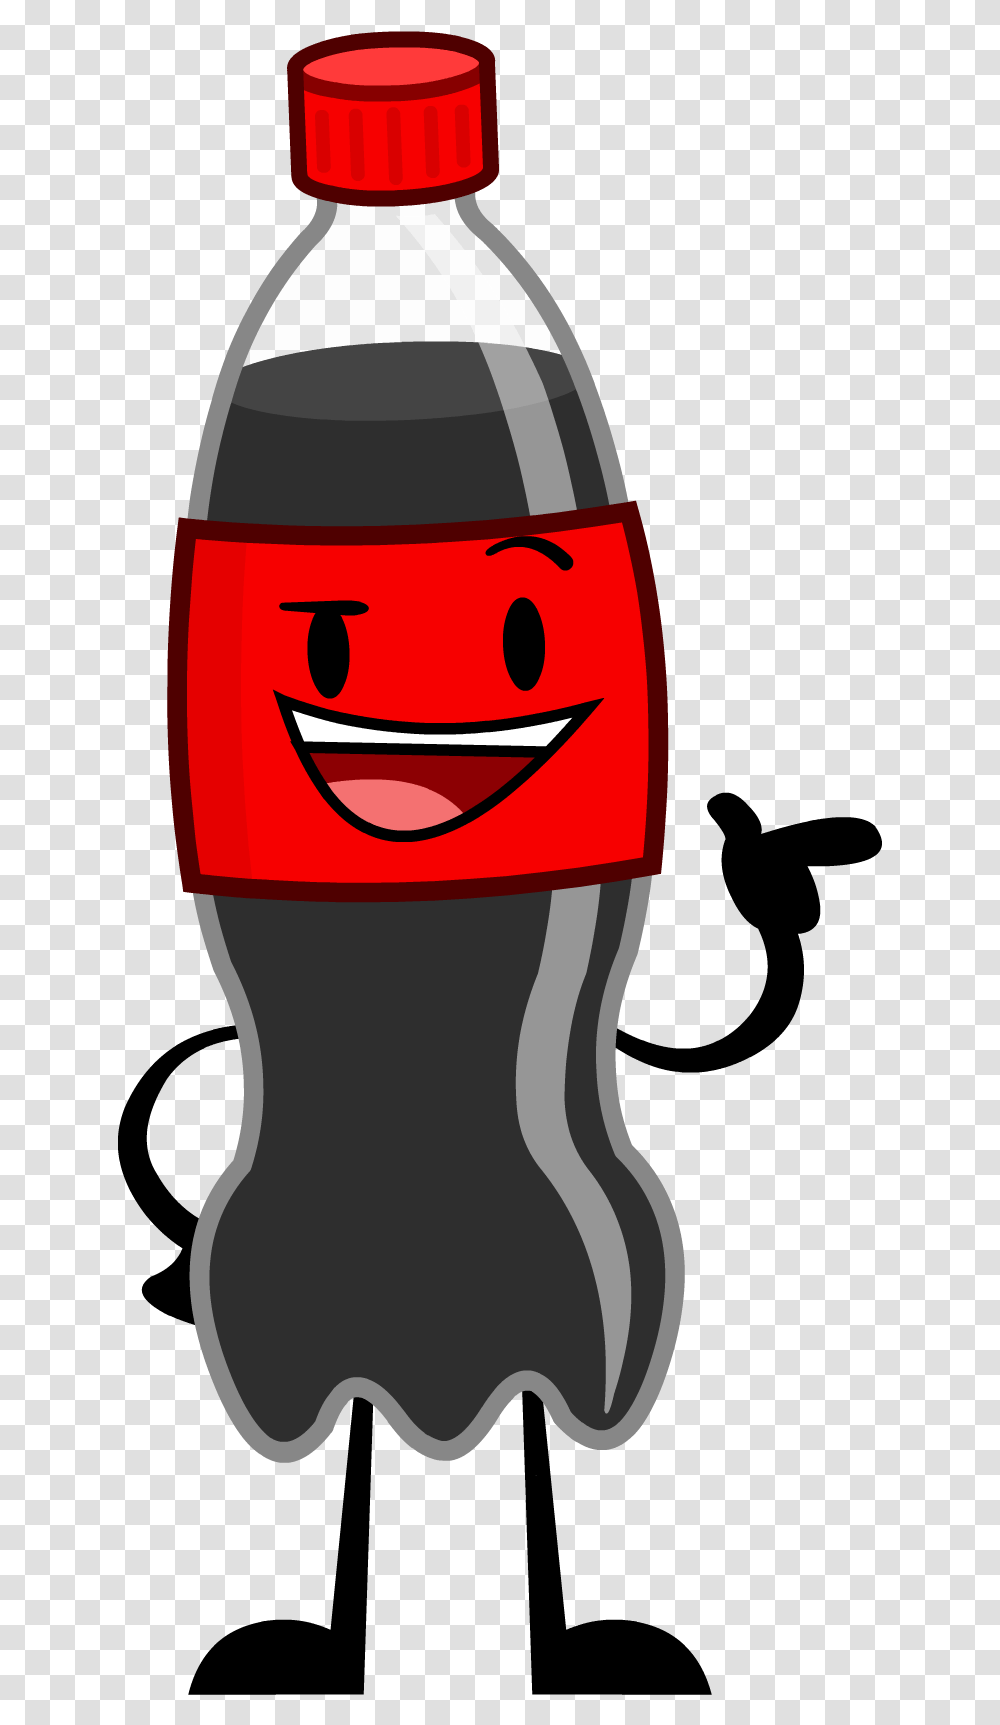 Cool Insanity Coke Bottle Image Coca Cola Bottles Cartoons, Beverage, Drink, Glass, Alcohol Transparent Png